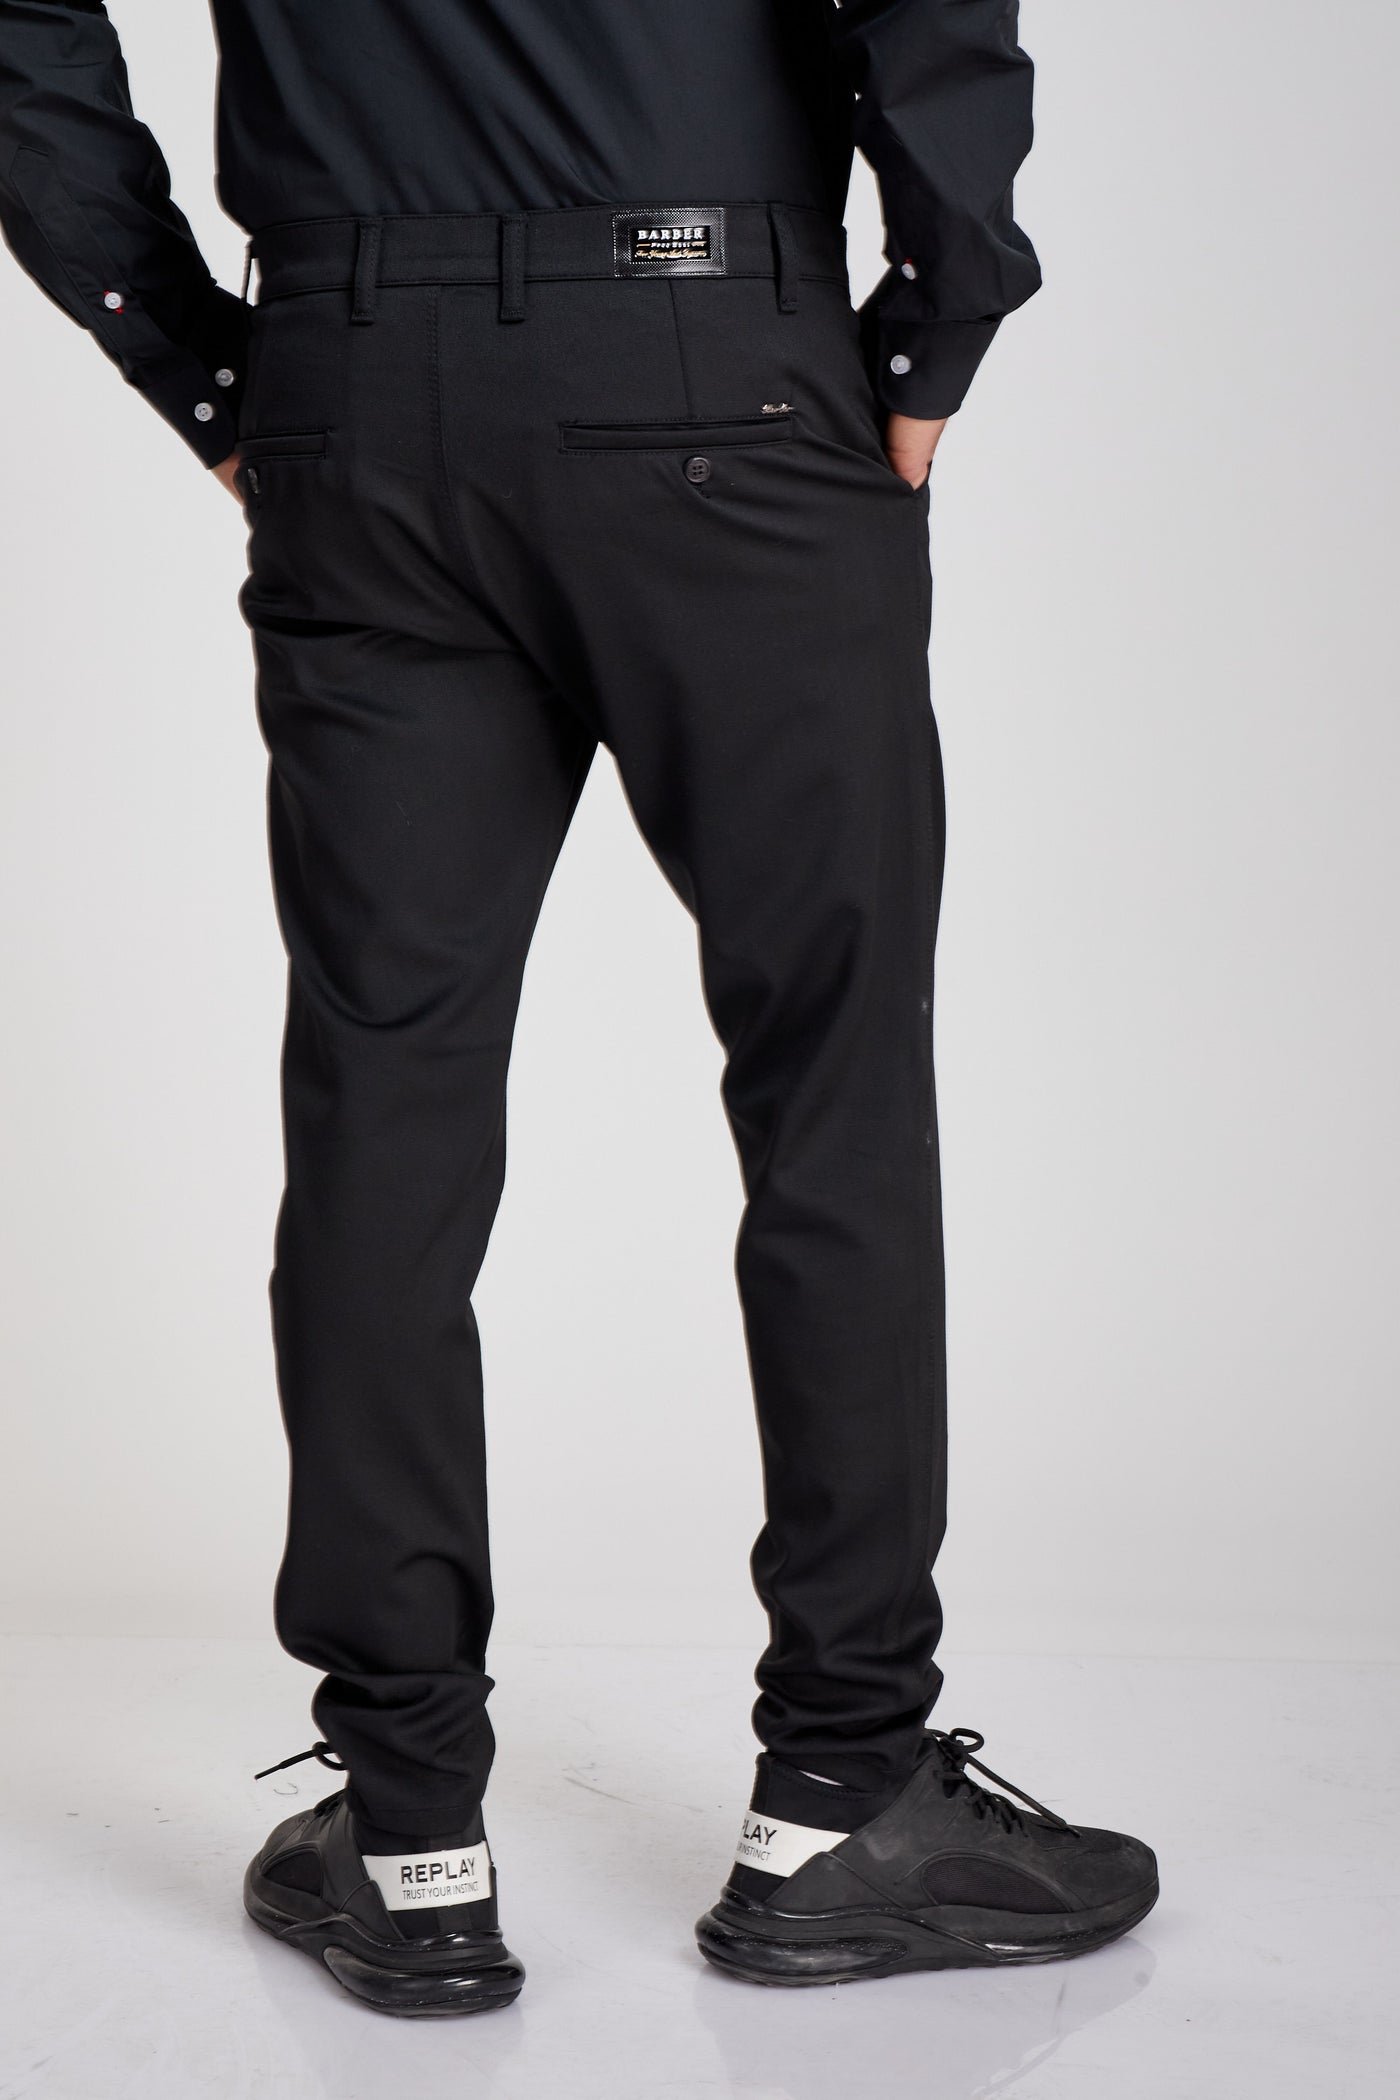 מכנס אלגנט בצבע שחור